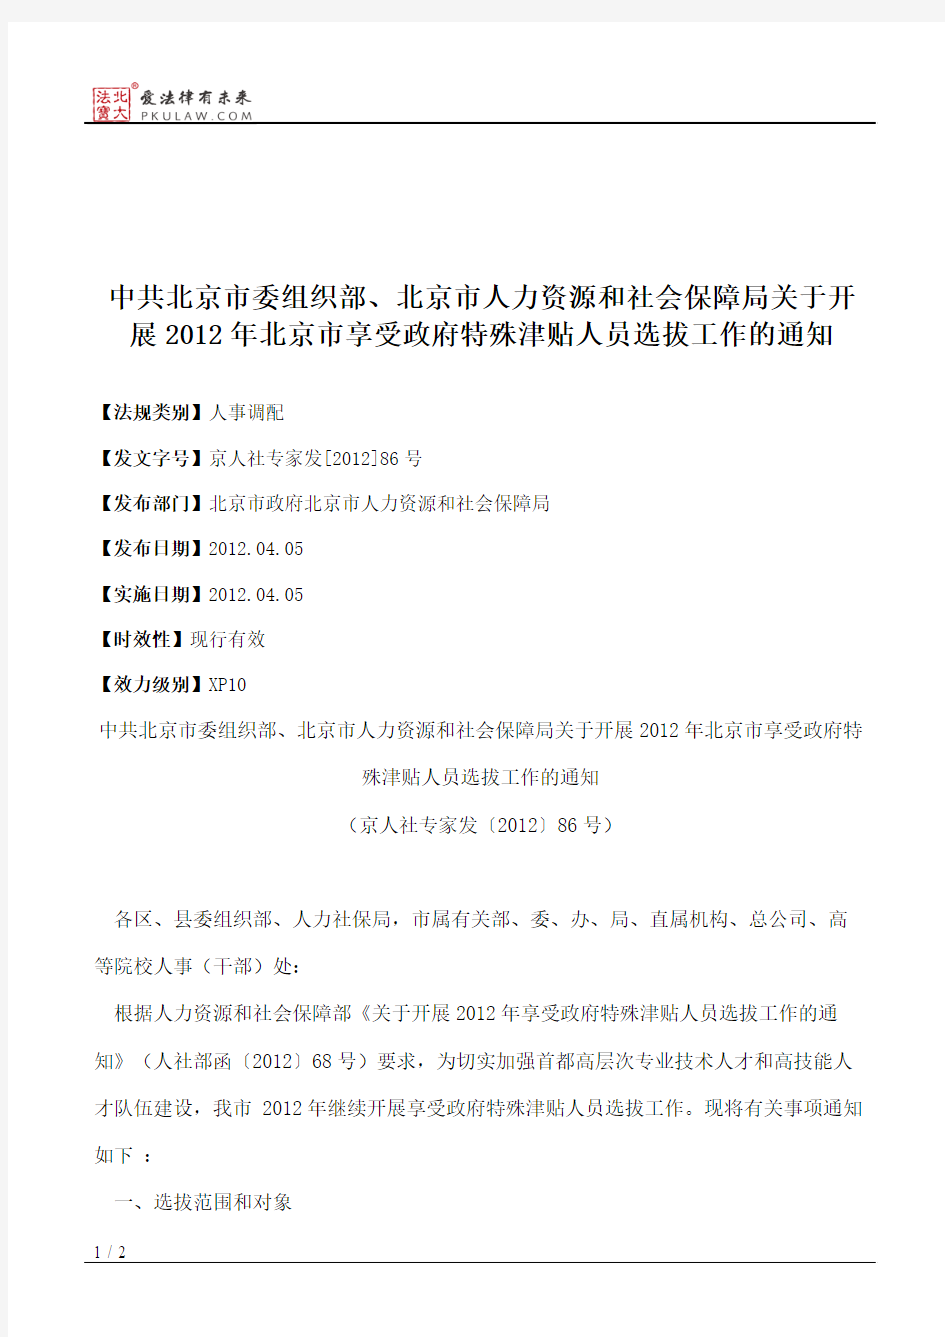 中共北京市委组织部、北京市人力资源和社会保障局关于开展2012年